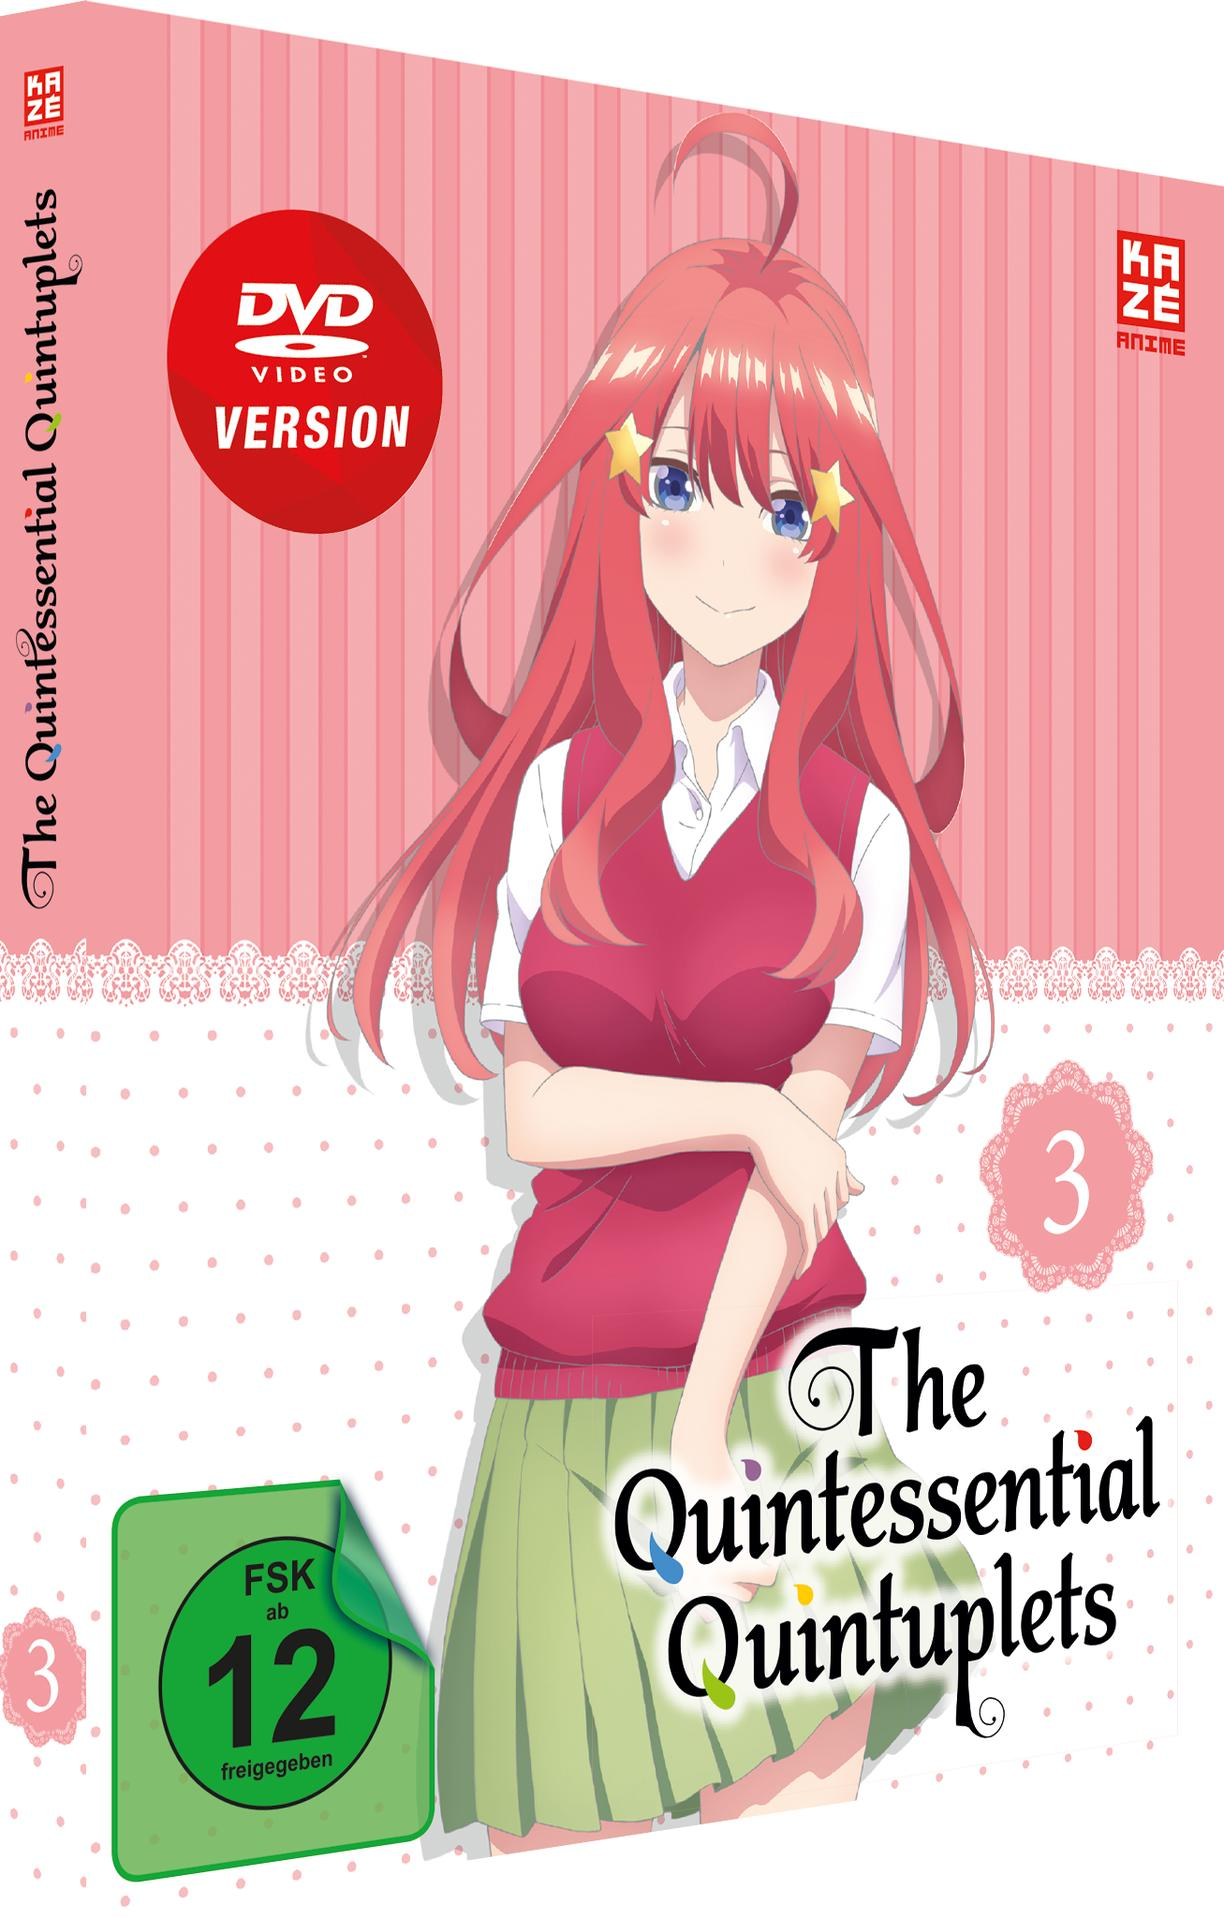 Quintessential – The 3 DVD Vol. Quintuplets